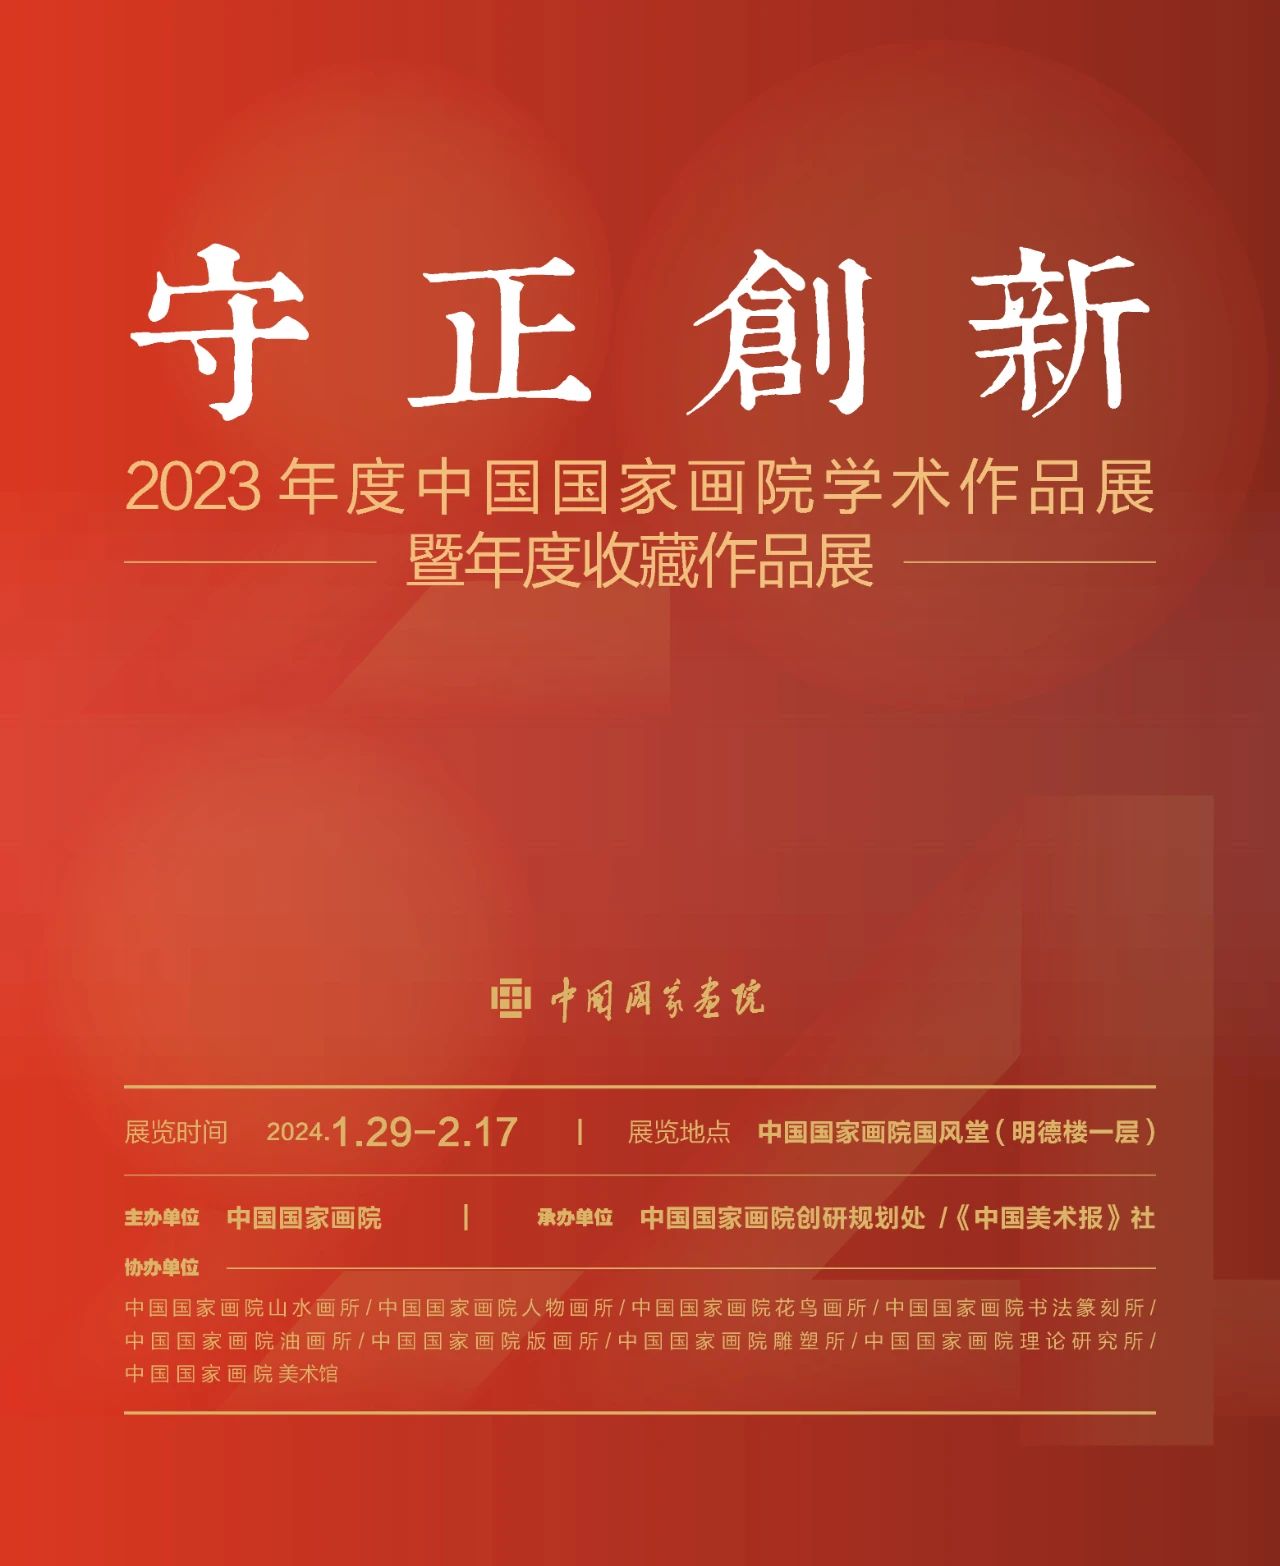 守正创新——2023年度中国国家画院学术作品展暨年度收藏作品展